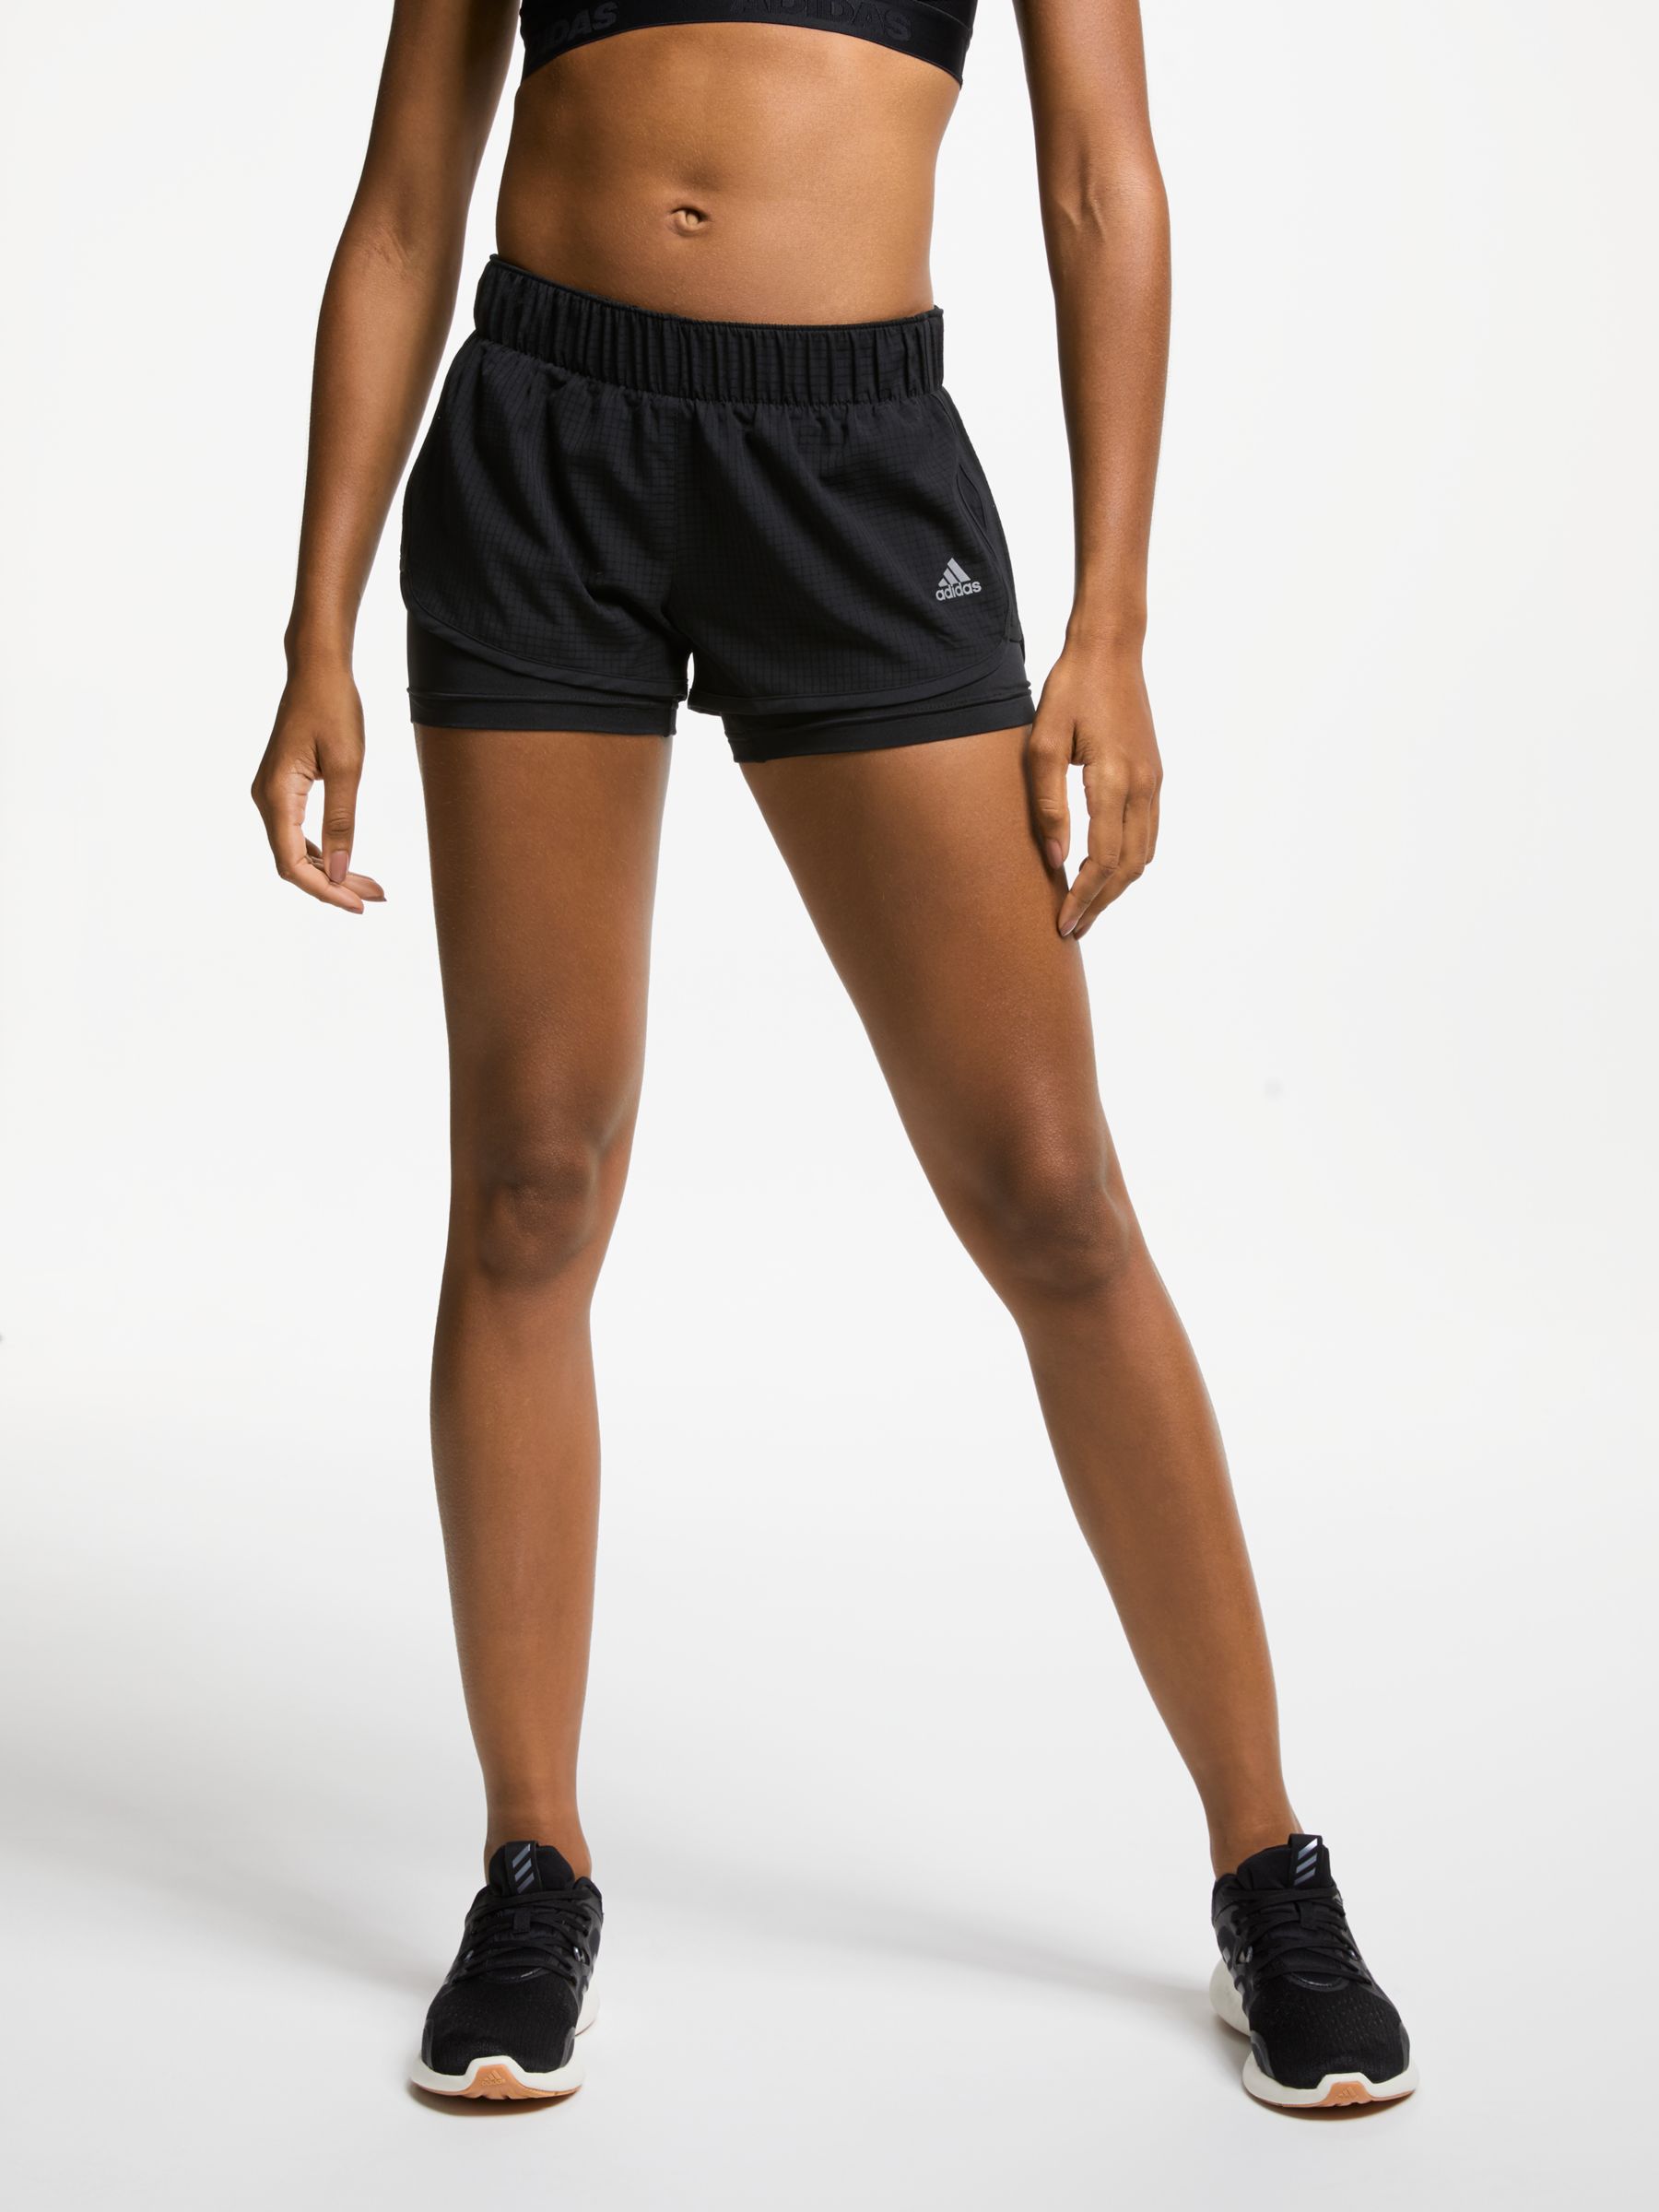 adidas M10 Running Shorts, Black at 